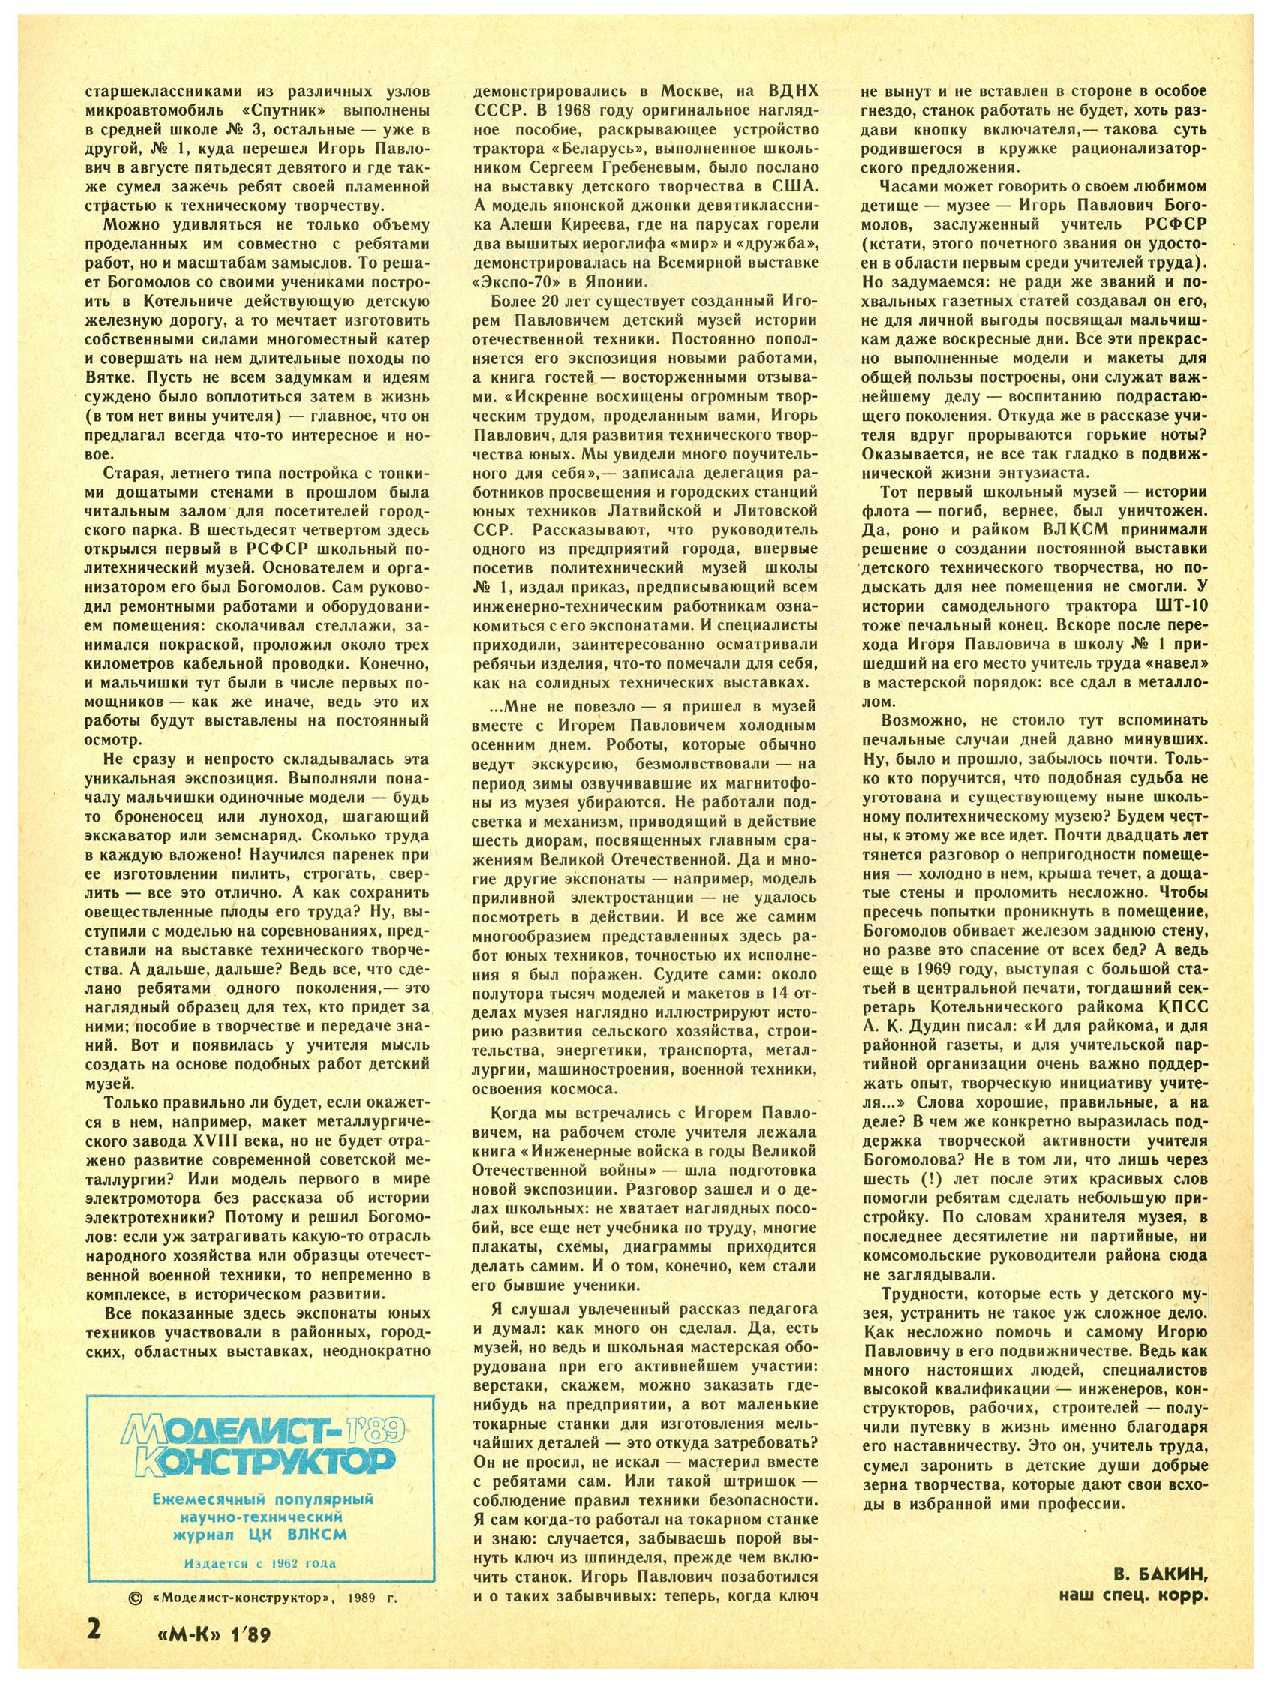 МК 1, 1989, 2 c.